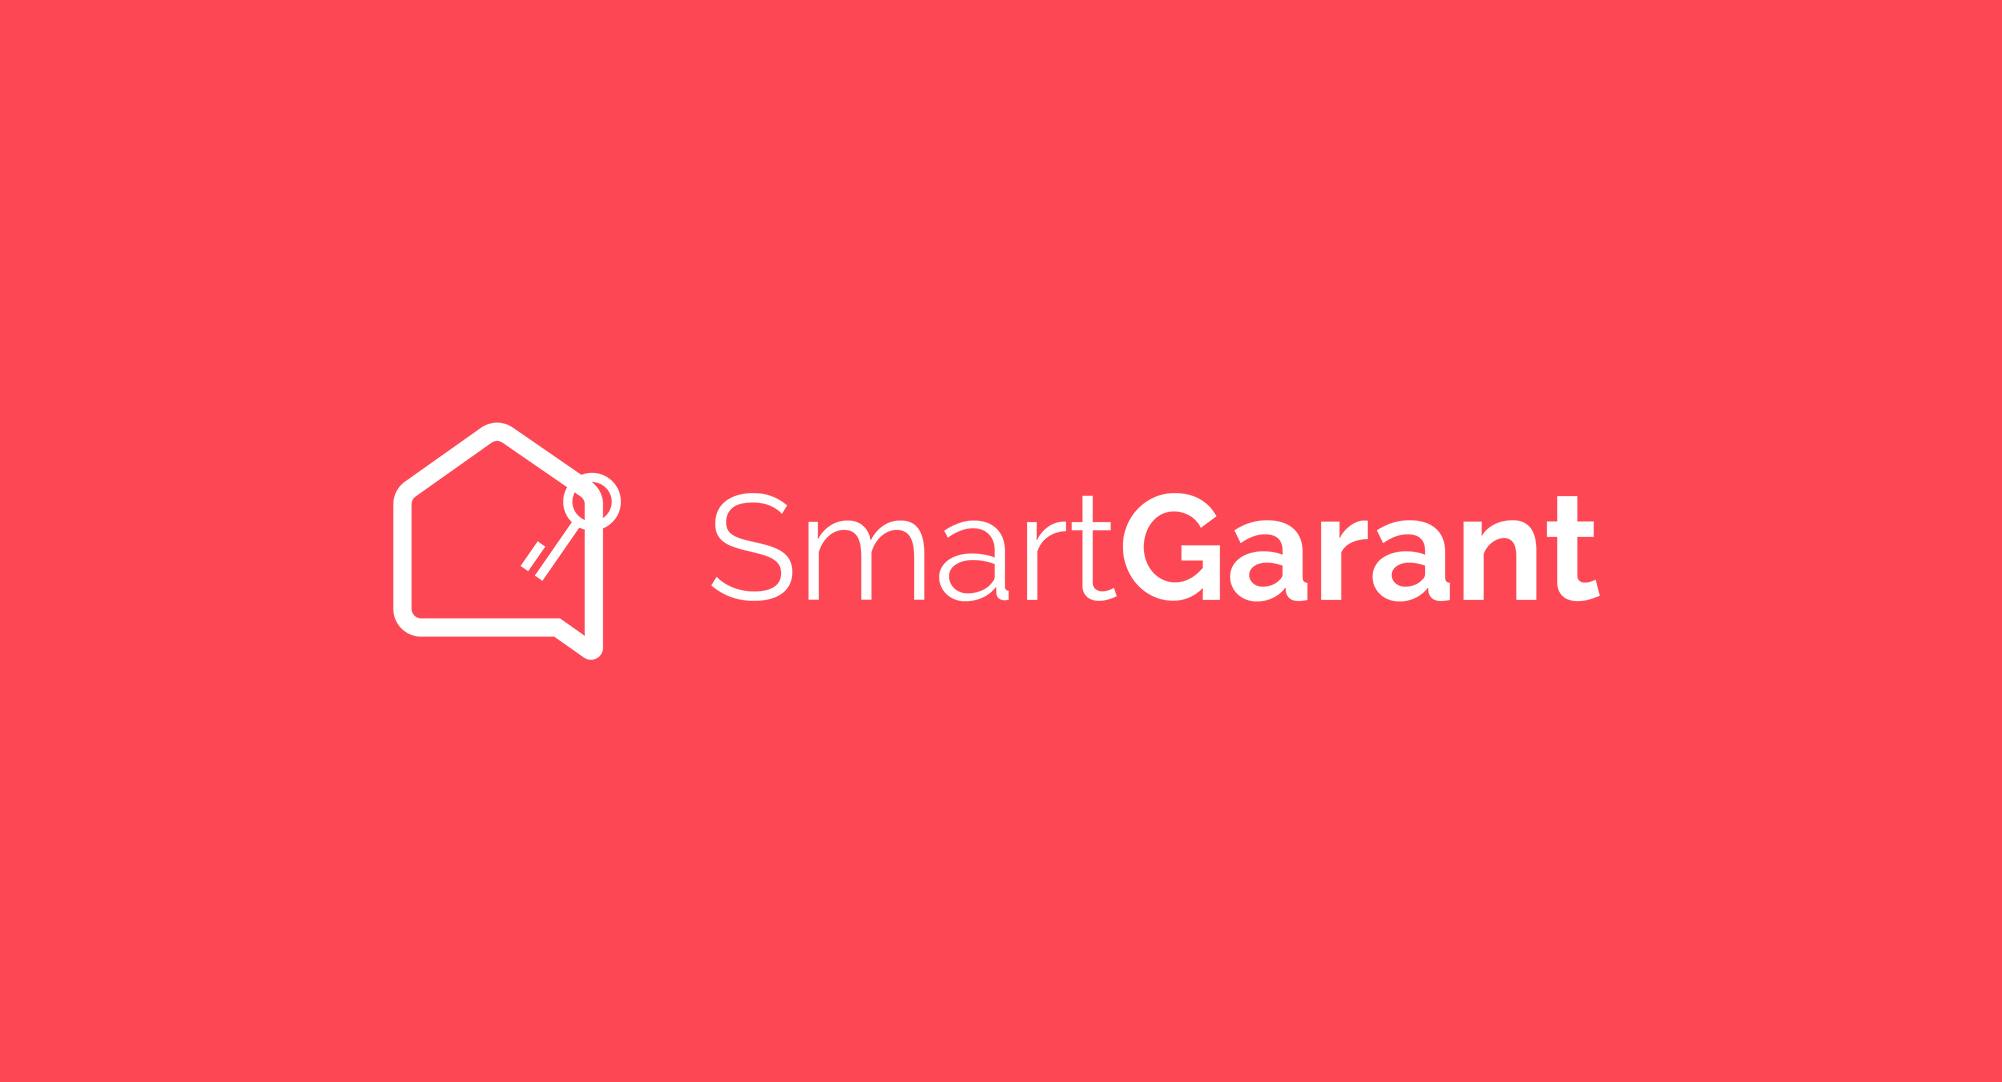 SmartGarant